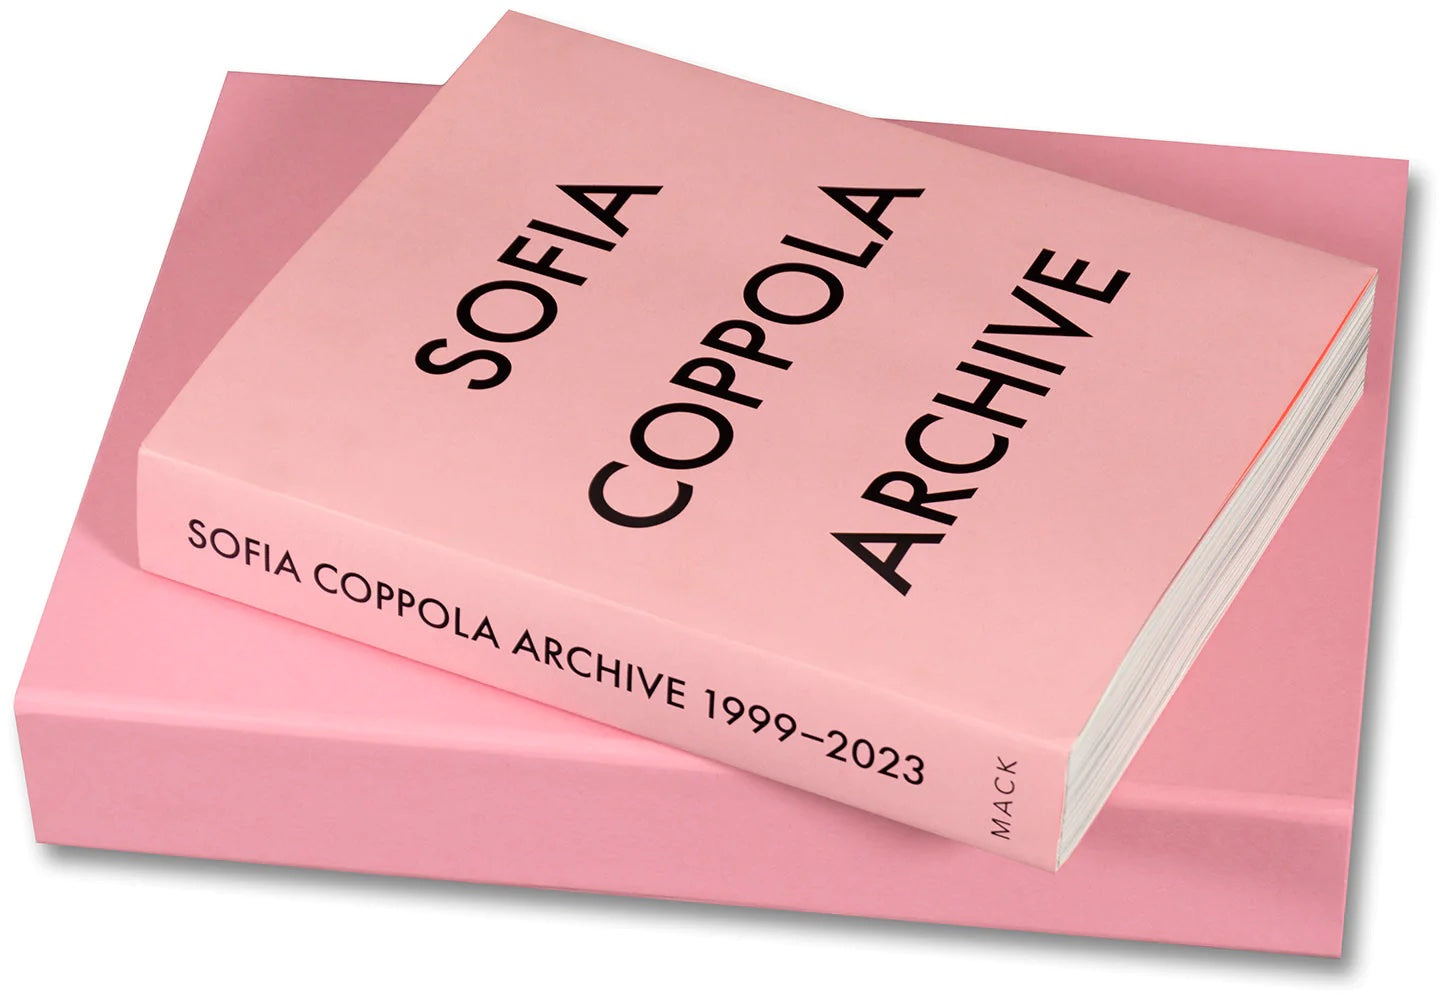 Sofia Coppola Archive (Special Edition)